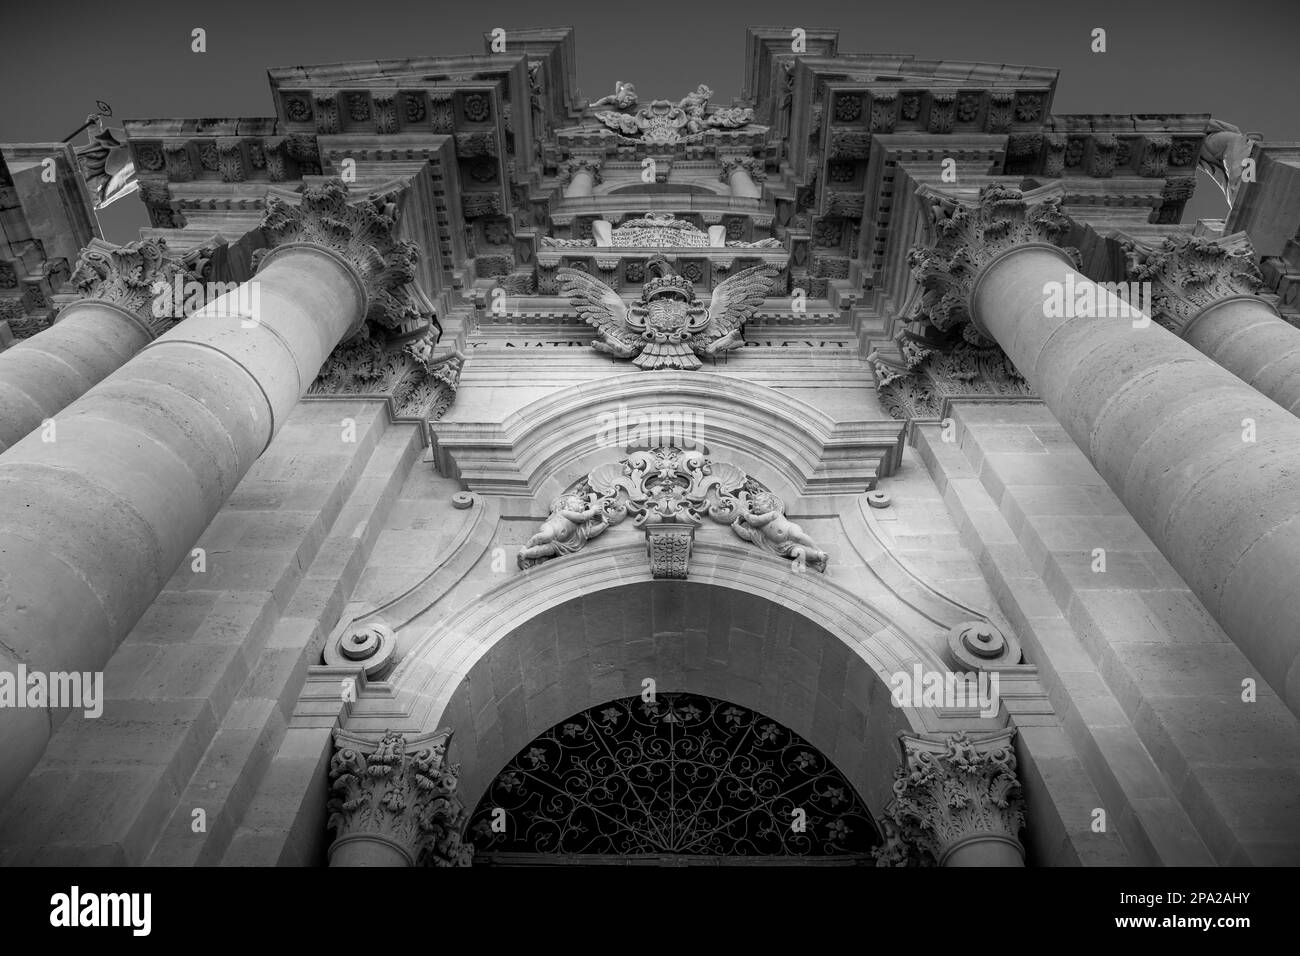 Particolare della Cattedrale barocca di Siracusa, Italia, situata nella zona di Ortigia Foto Stock